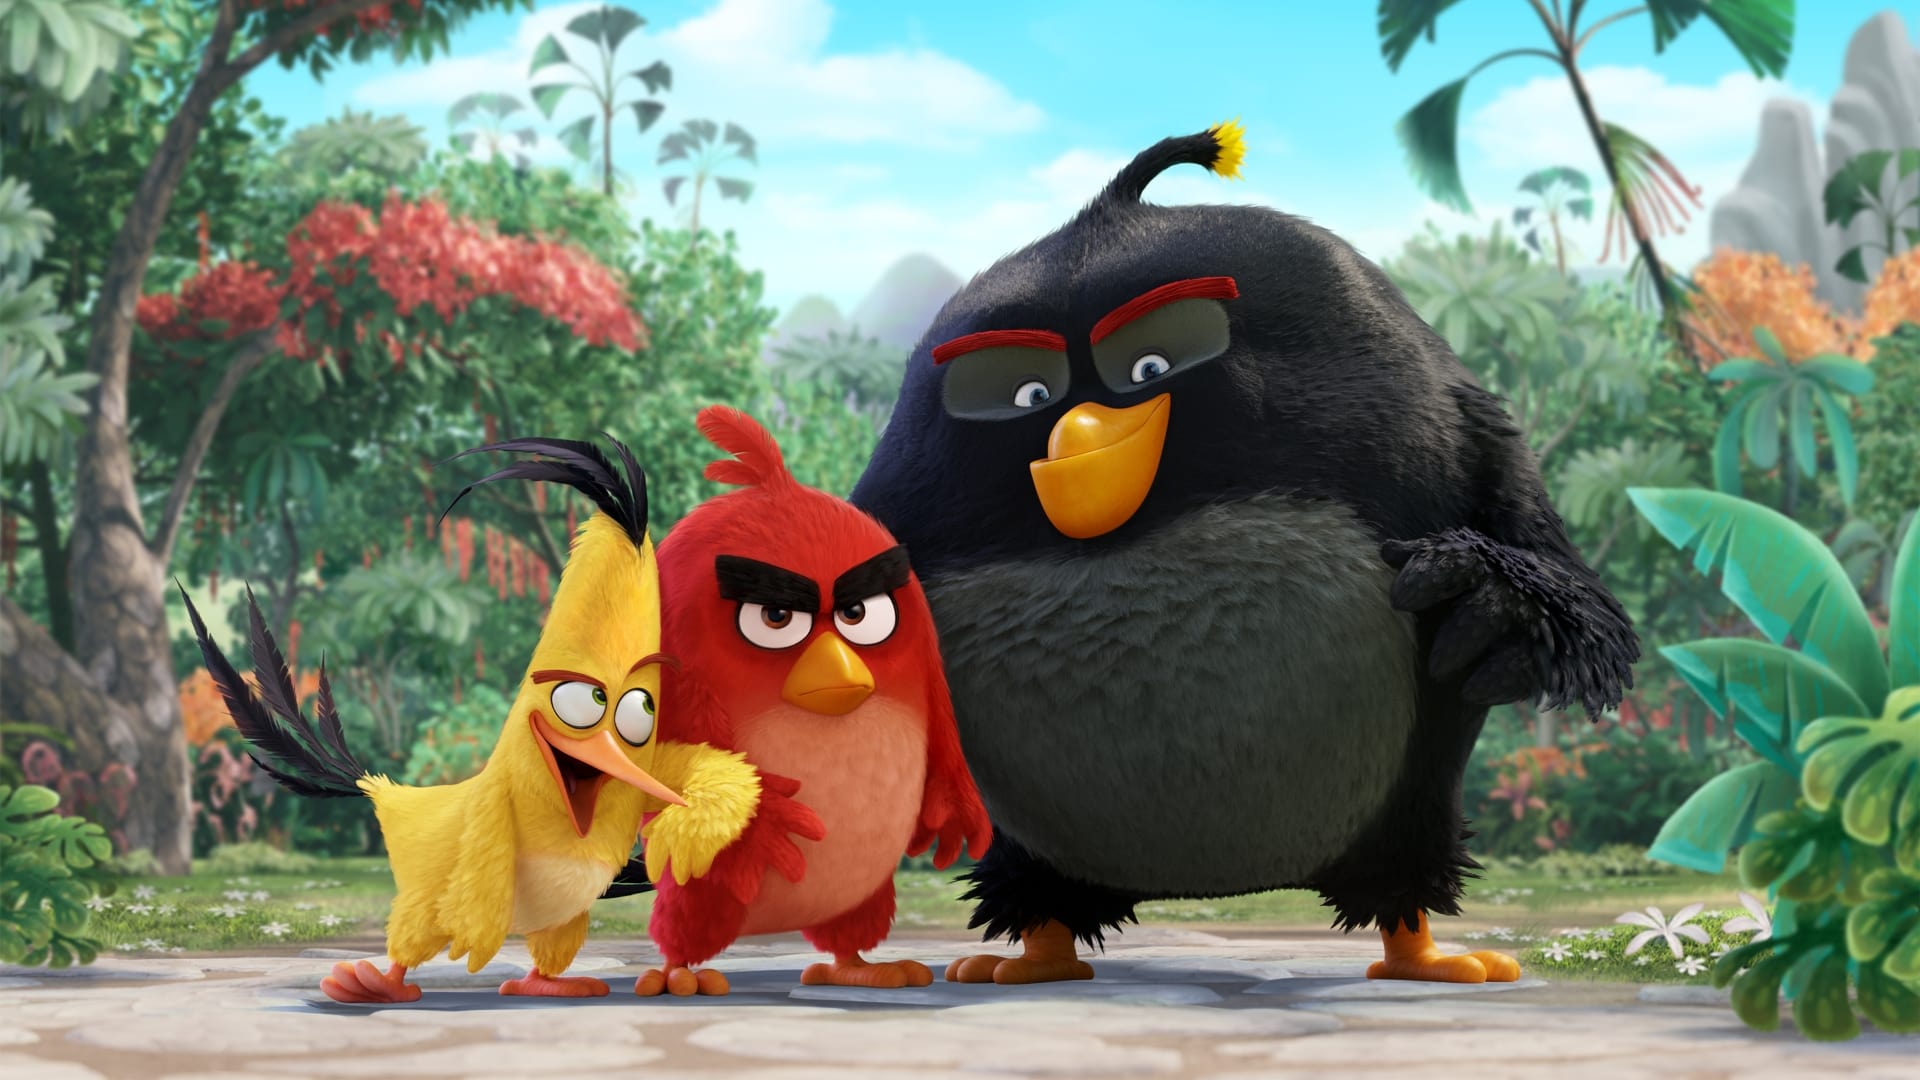 Angry Birds у кіно (2016)